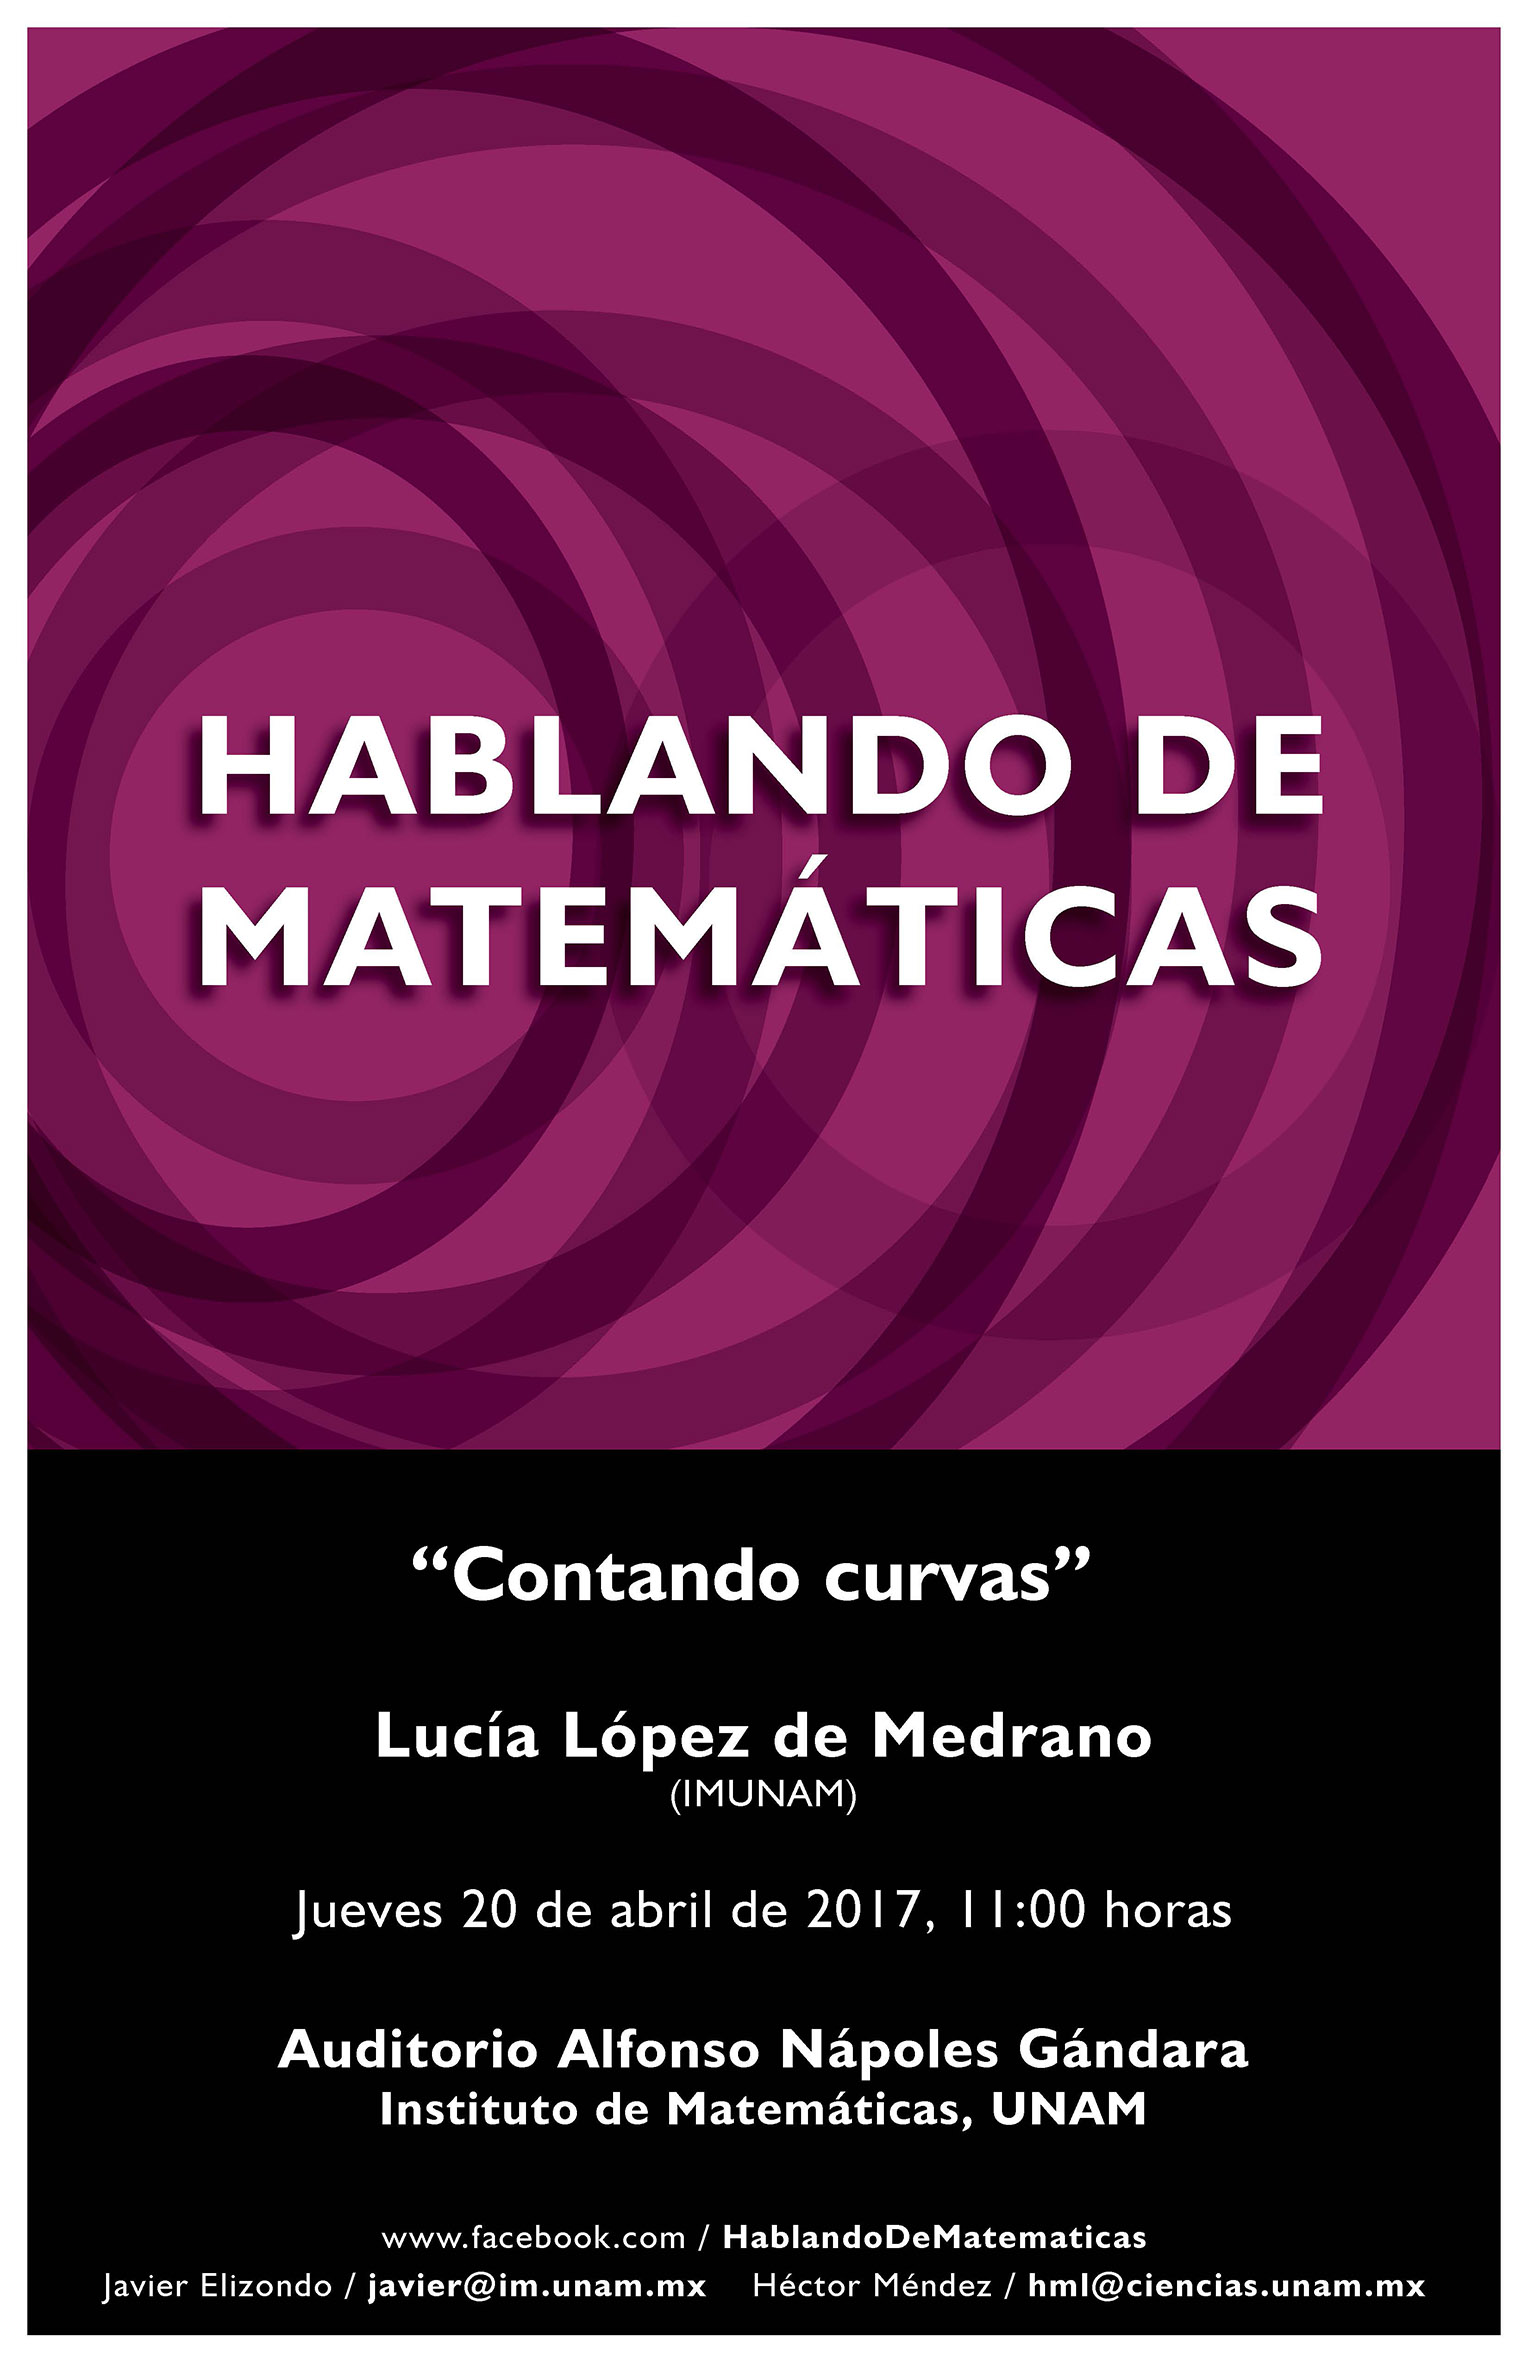 Hablando de Matemáticas: Lucía López de Medrano, IMUNAM